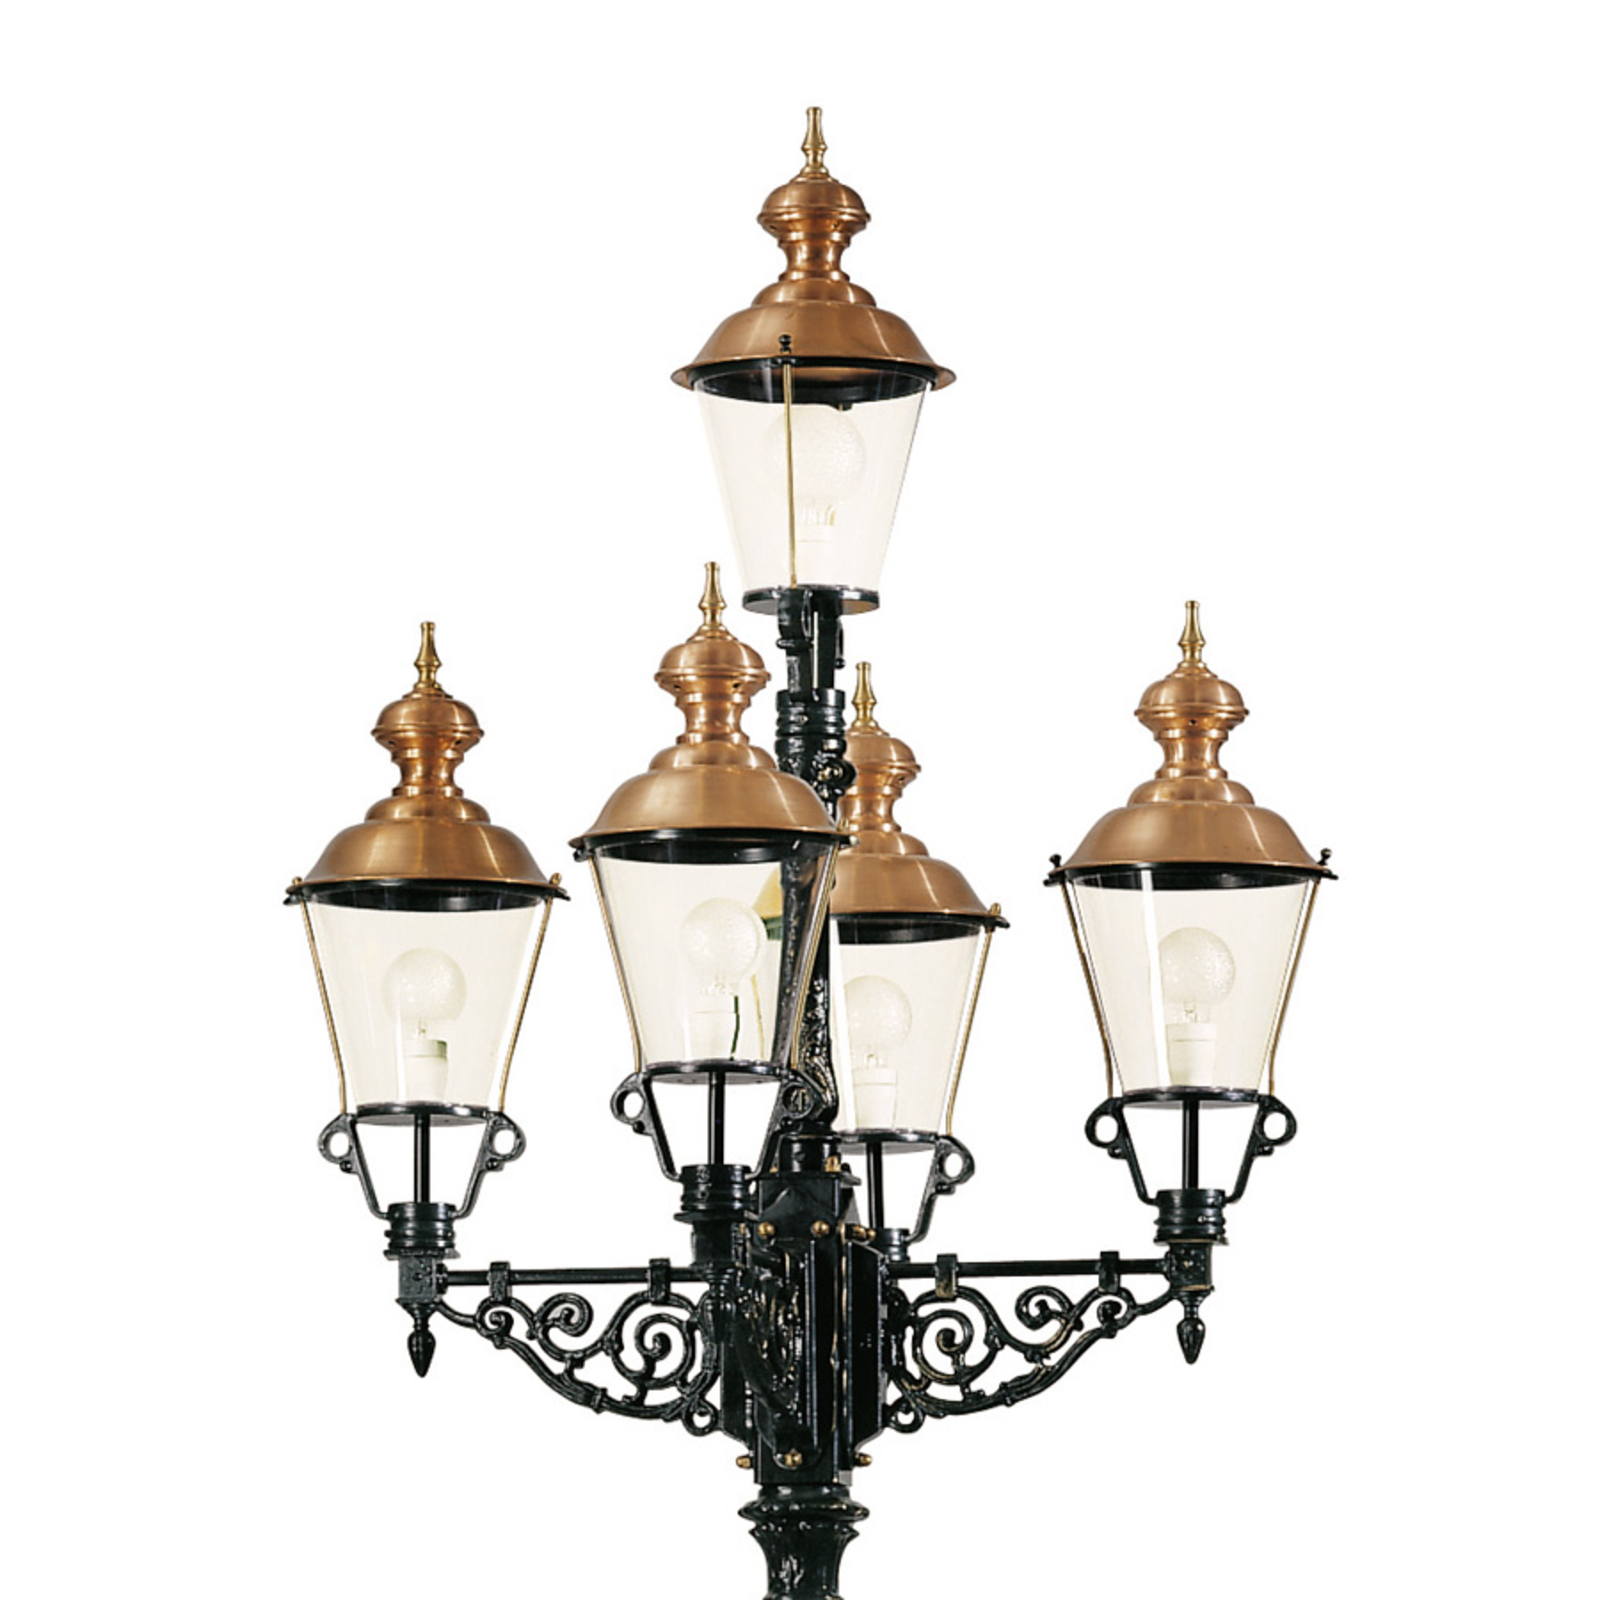 Representatieve lantaarnpaal Monaco 5-lamps